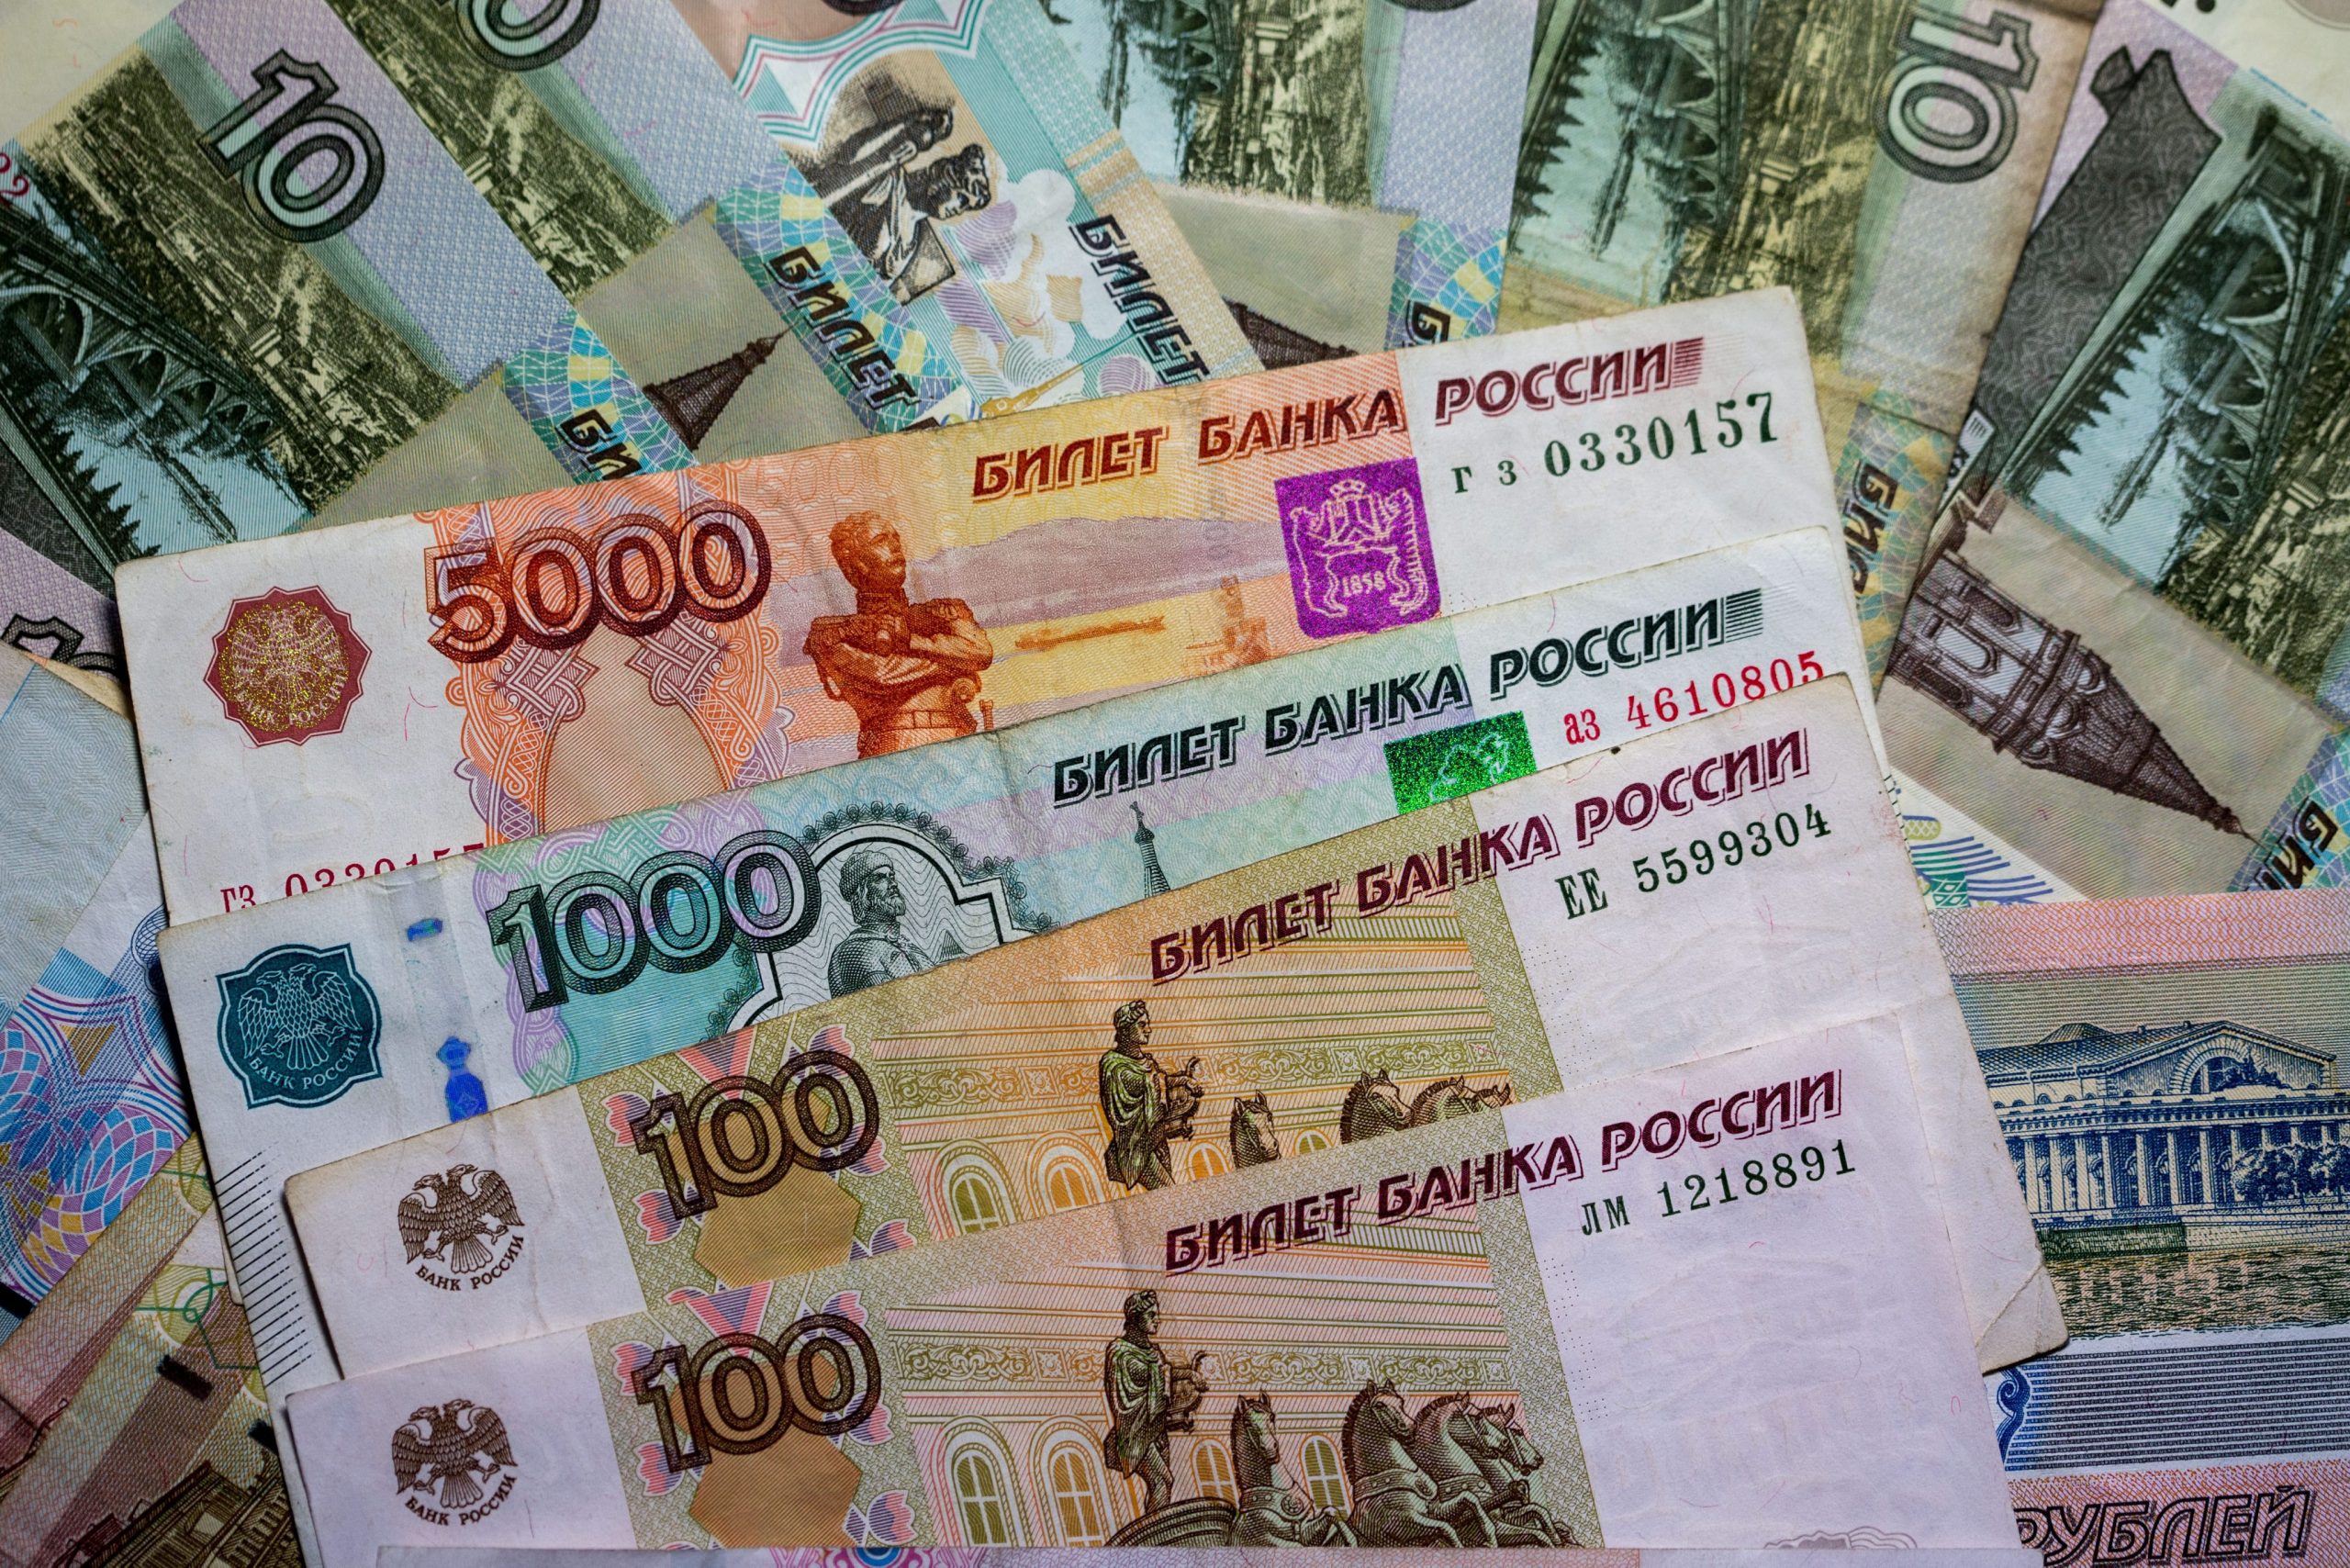 Ρωσία: Πώς ο πόλεμος «άδειασε» τις τράπεζες και γέμισε τη χώρα με σάκους από μετρητά